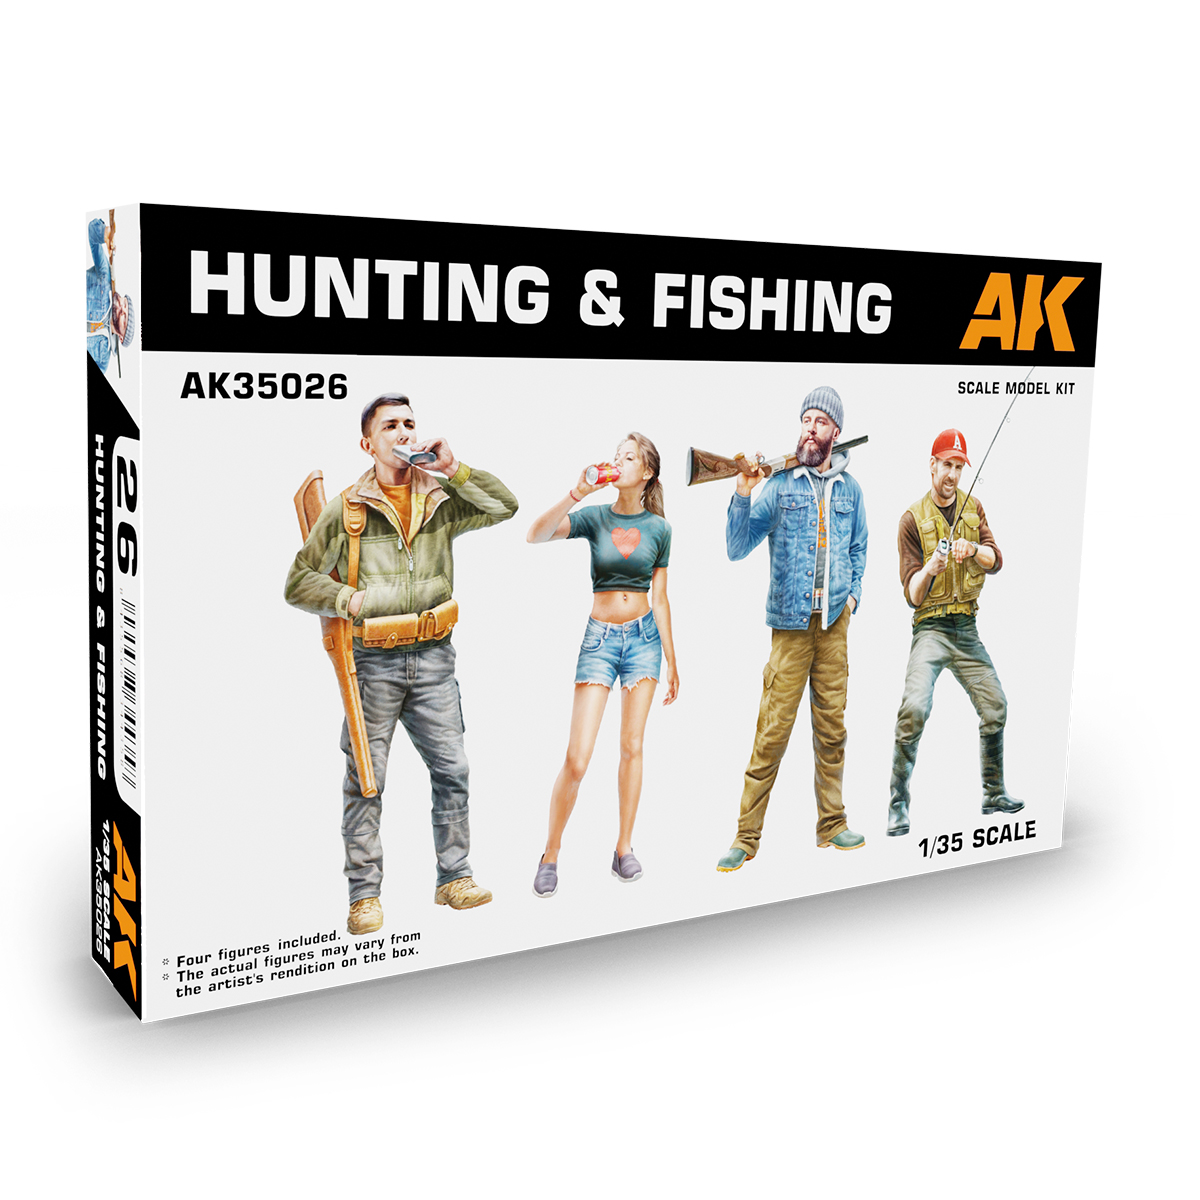 HUNTING & FISHING 1/35